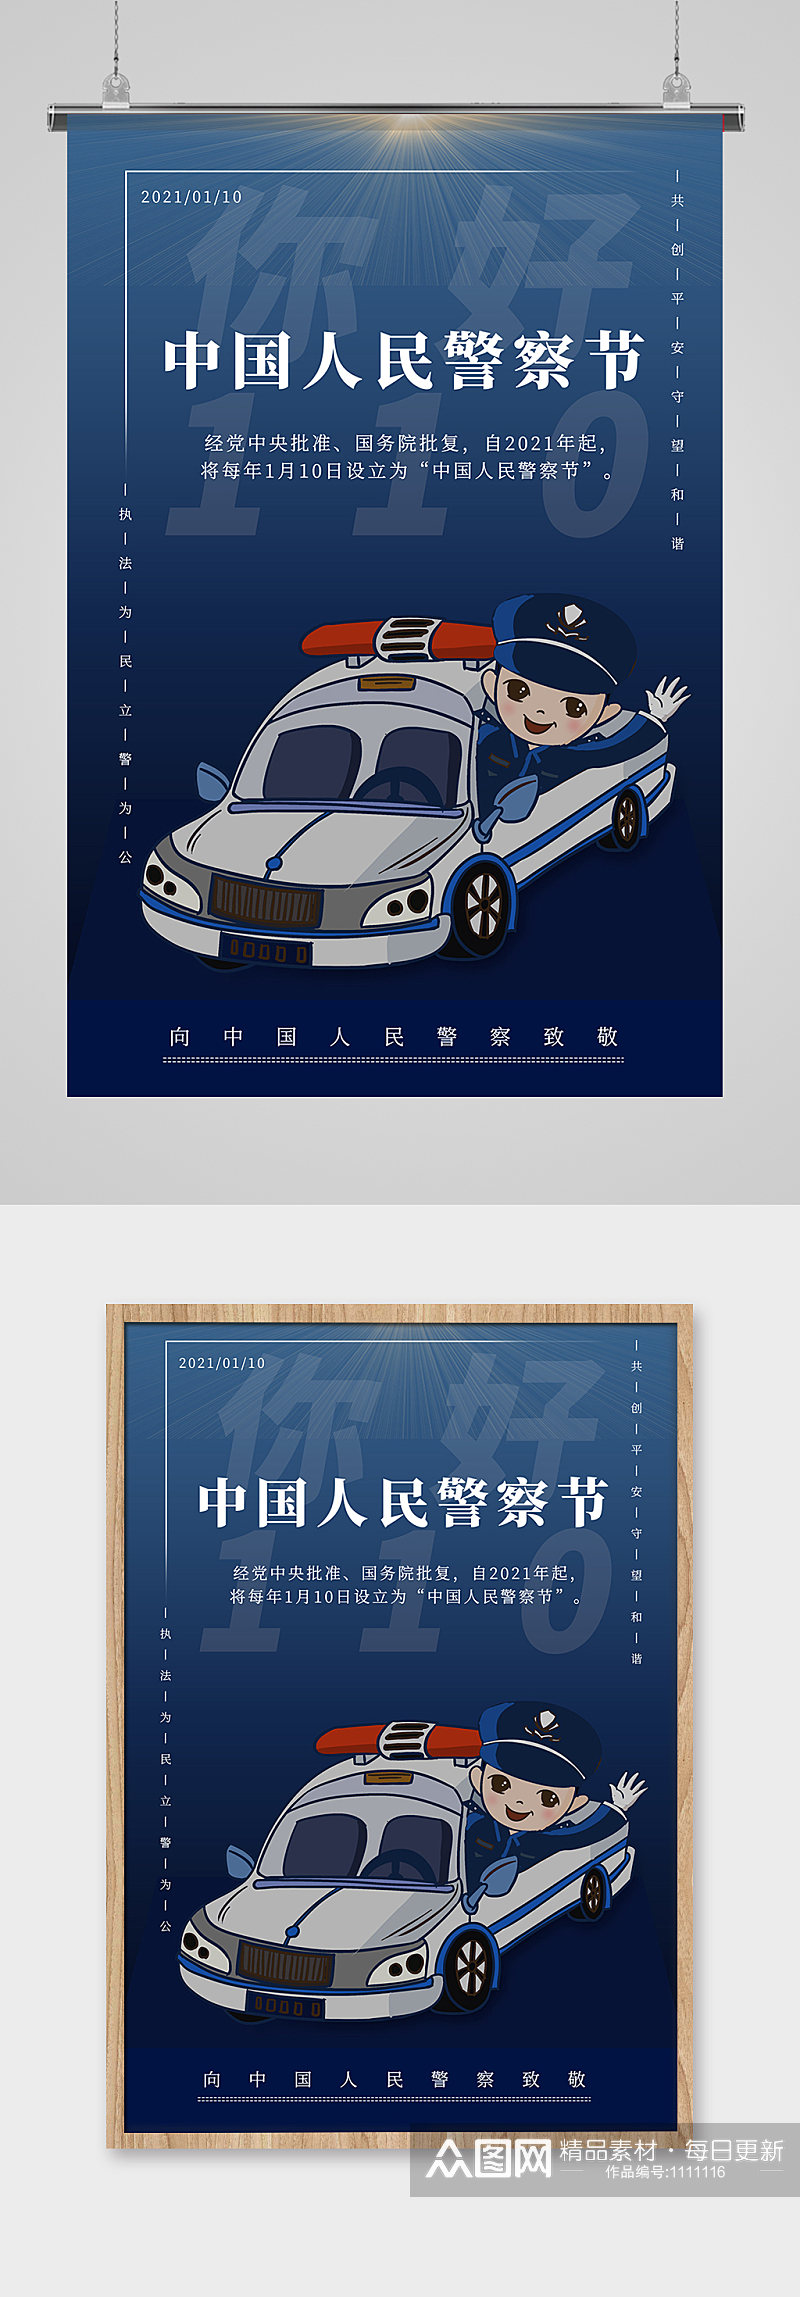 中国人民警察节宣传海报设计素材